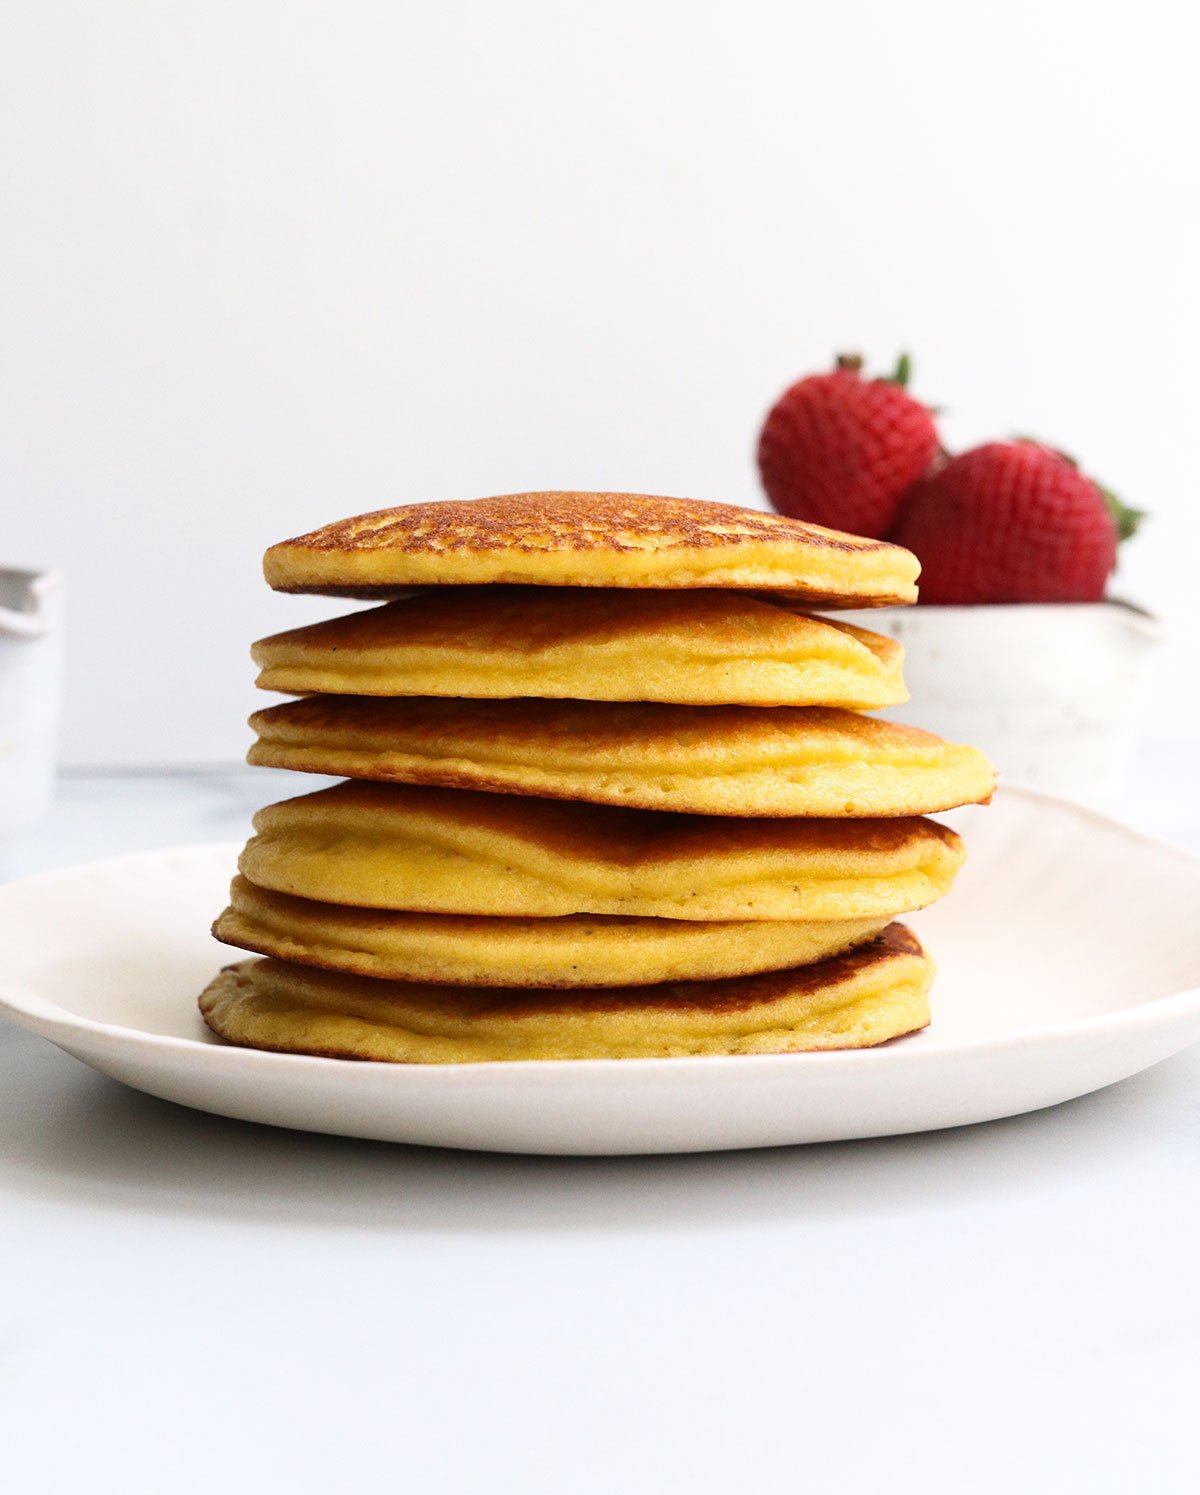 almond flour pancakes stacked on white plate.